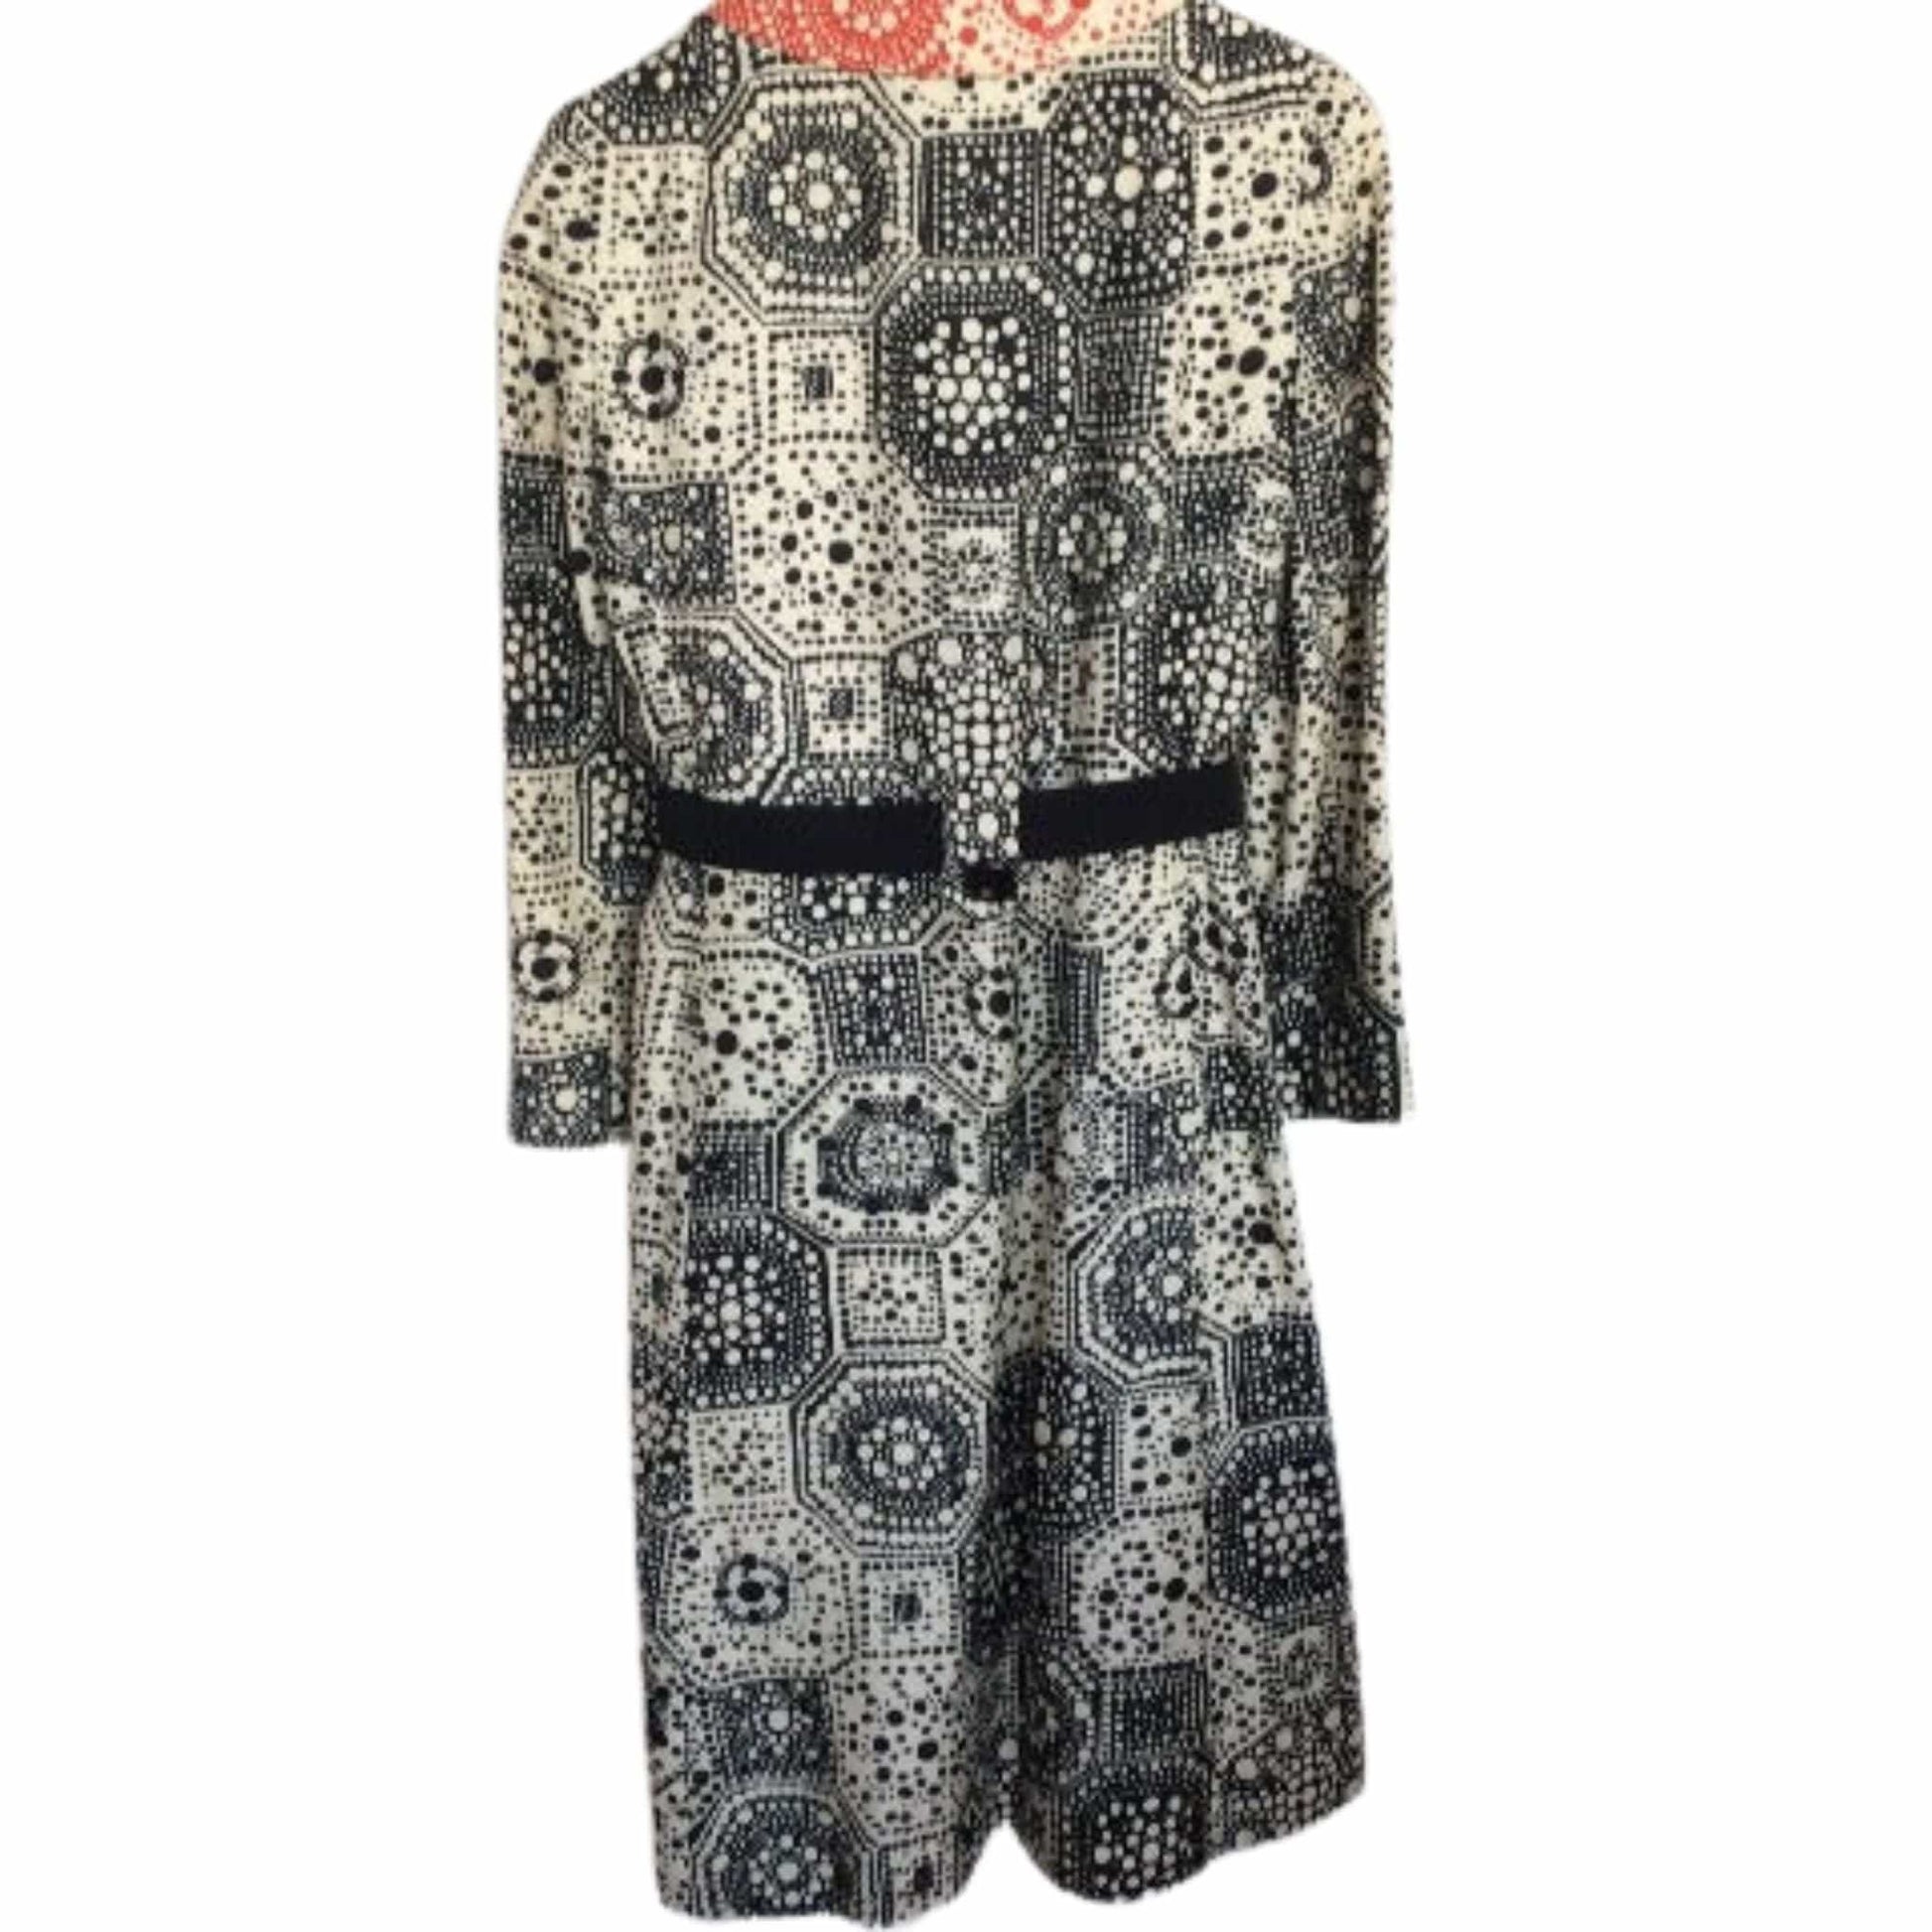 Silk Dress Suit Medium / Multi / Vintage 1960s